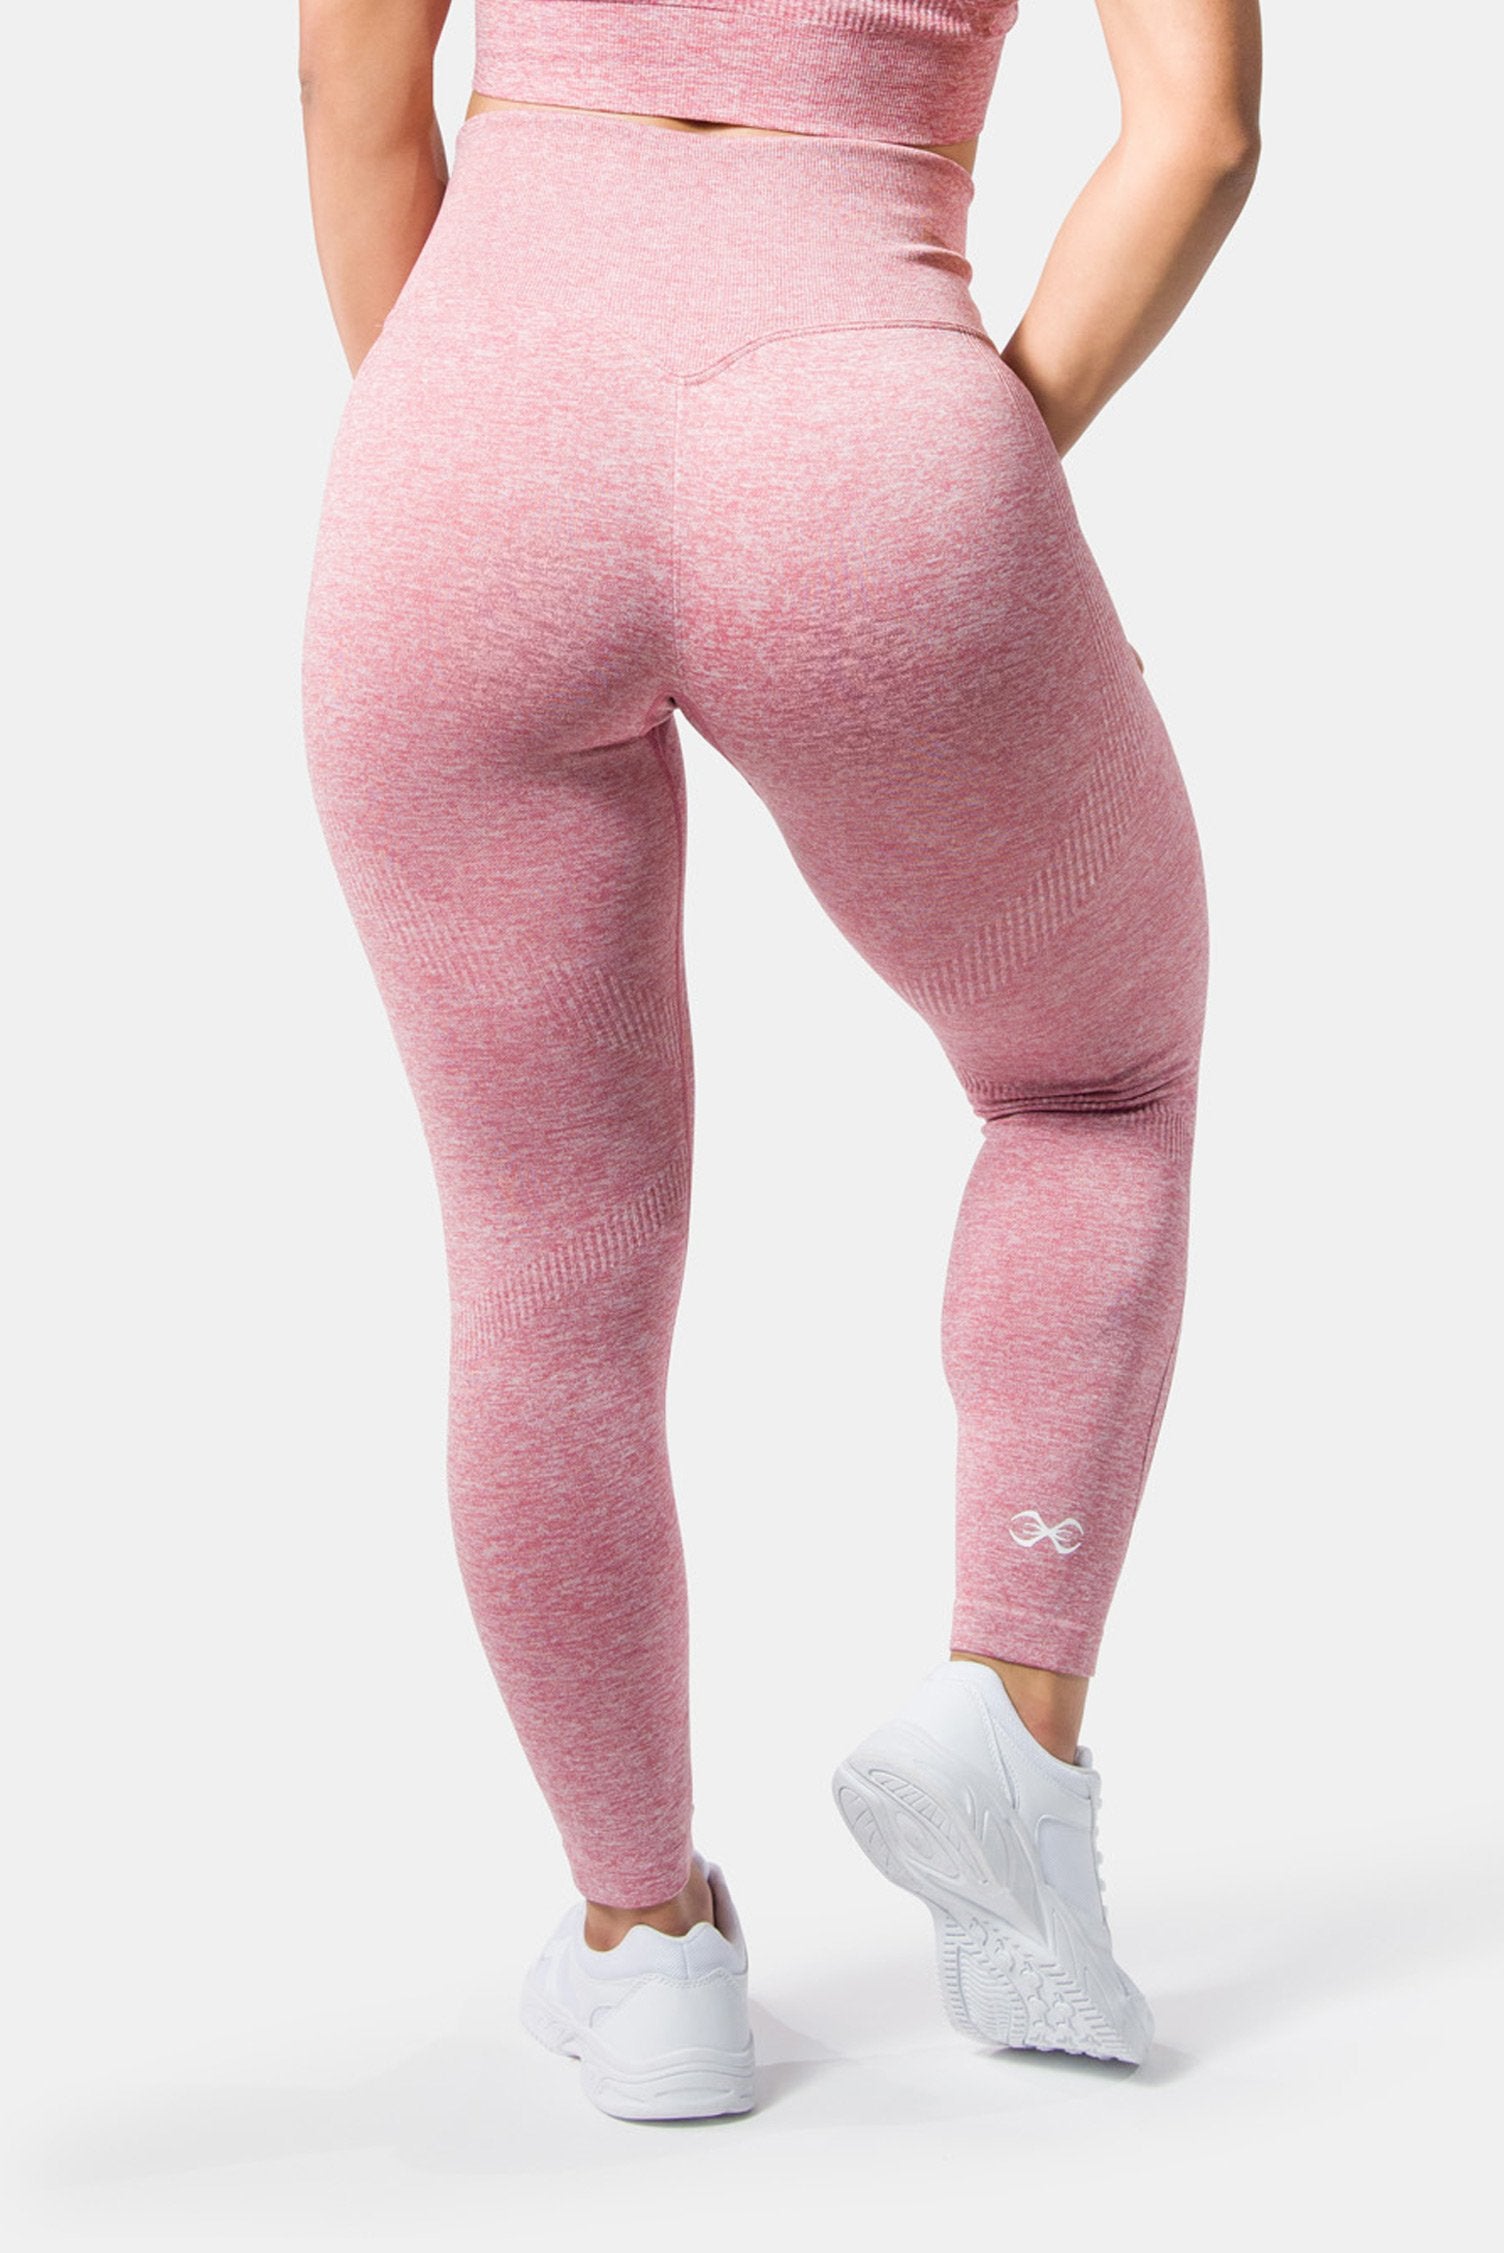 Emberly Leggings Animal Pink, XXS-XL